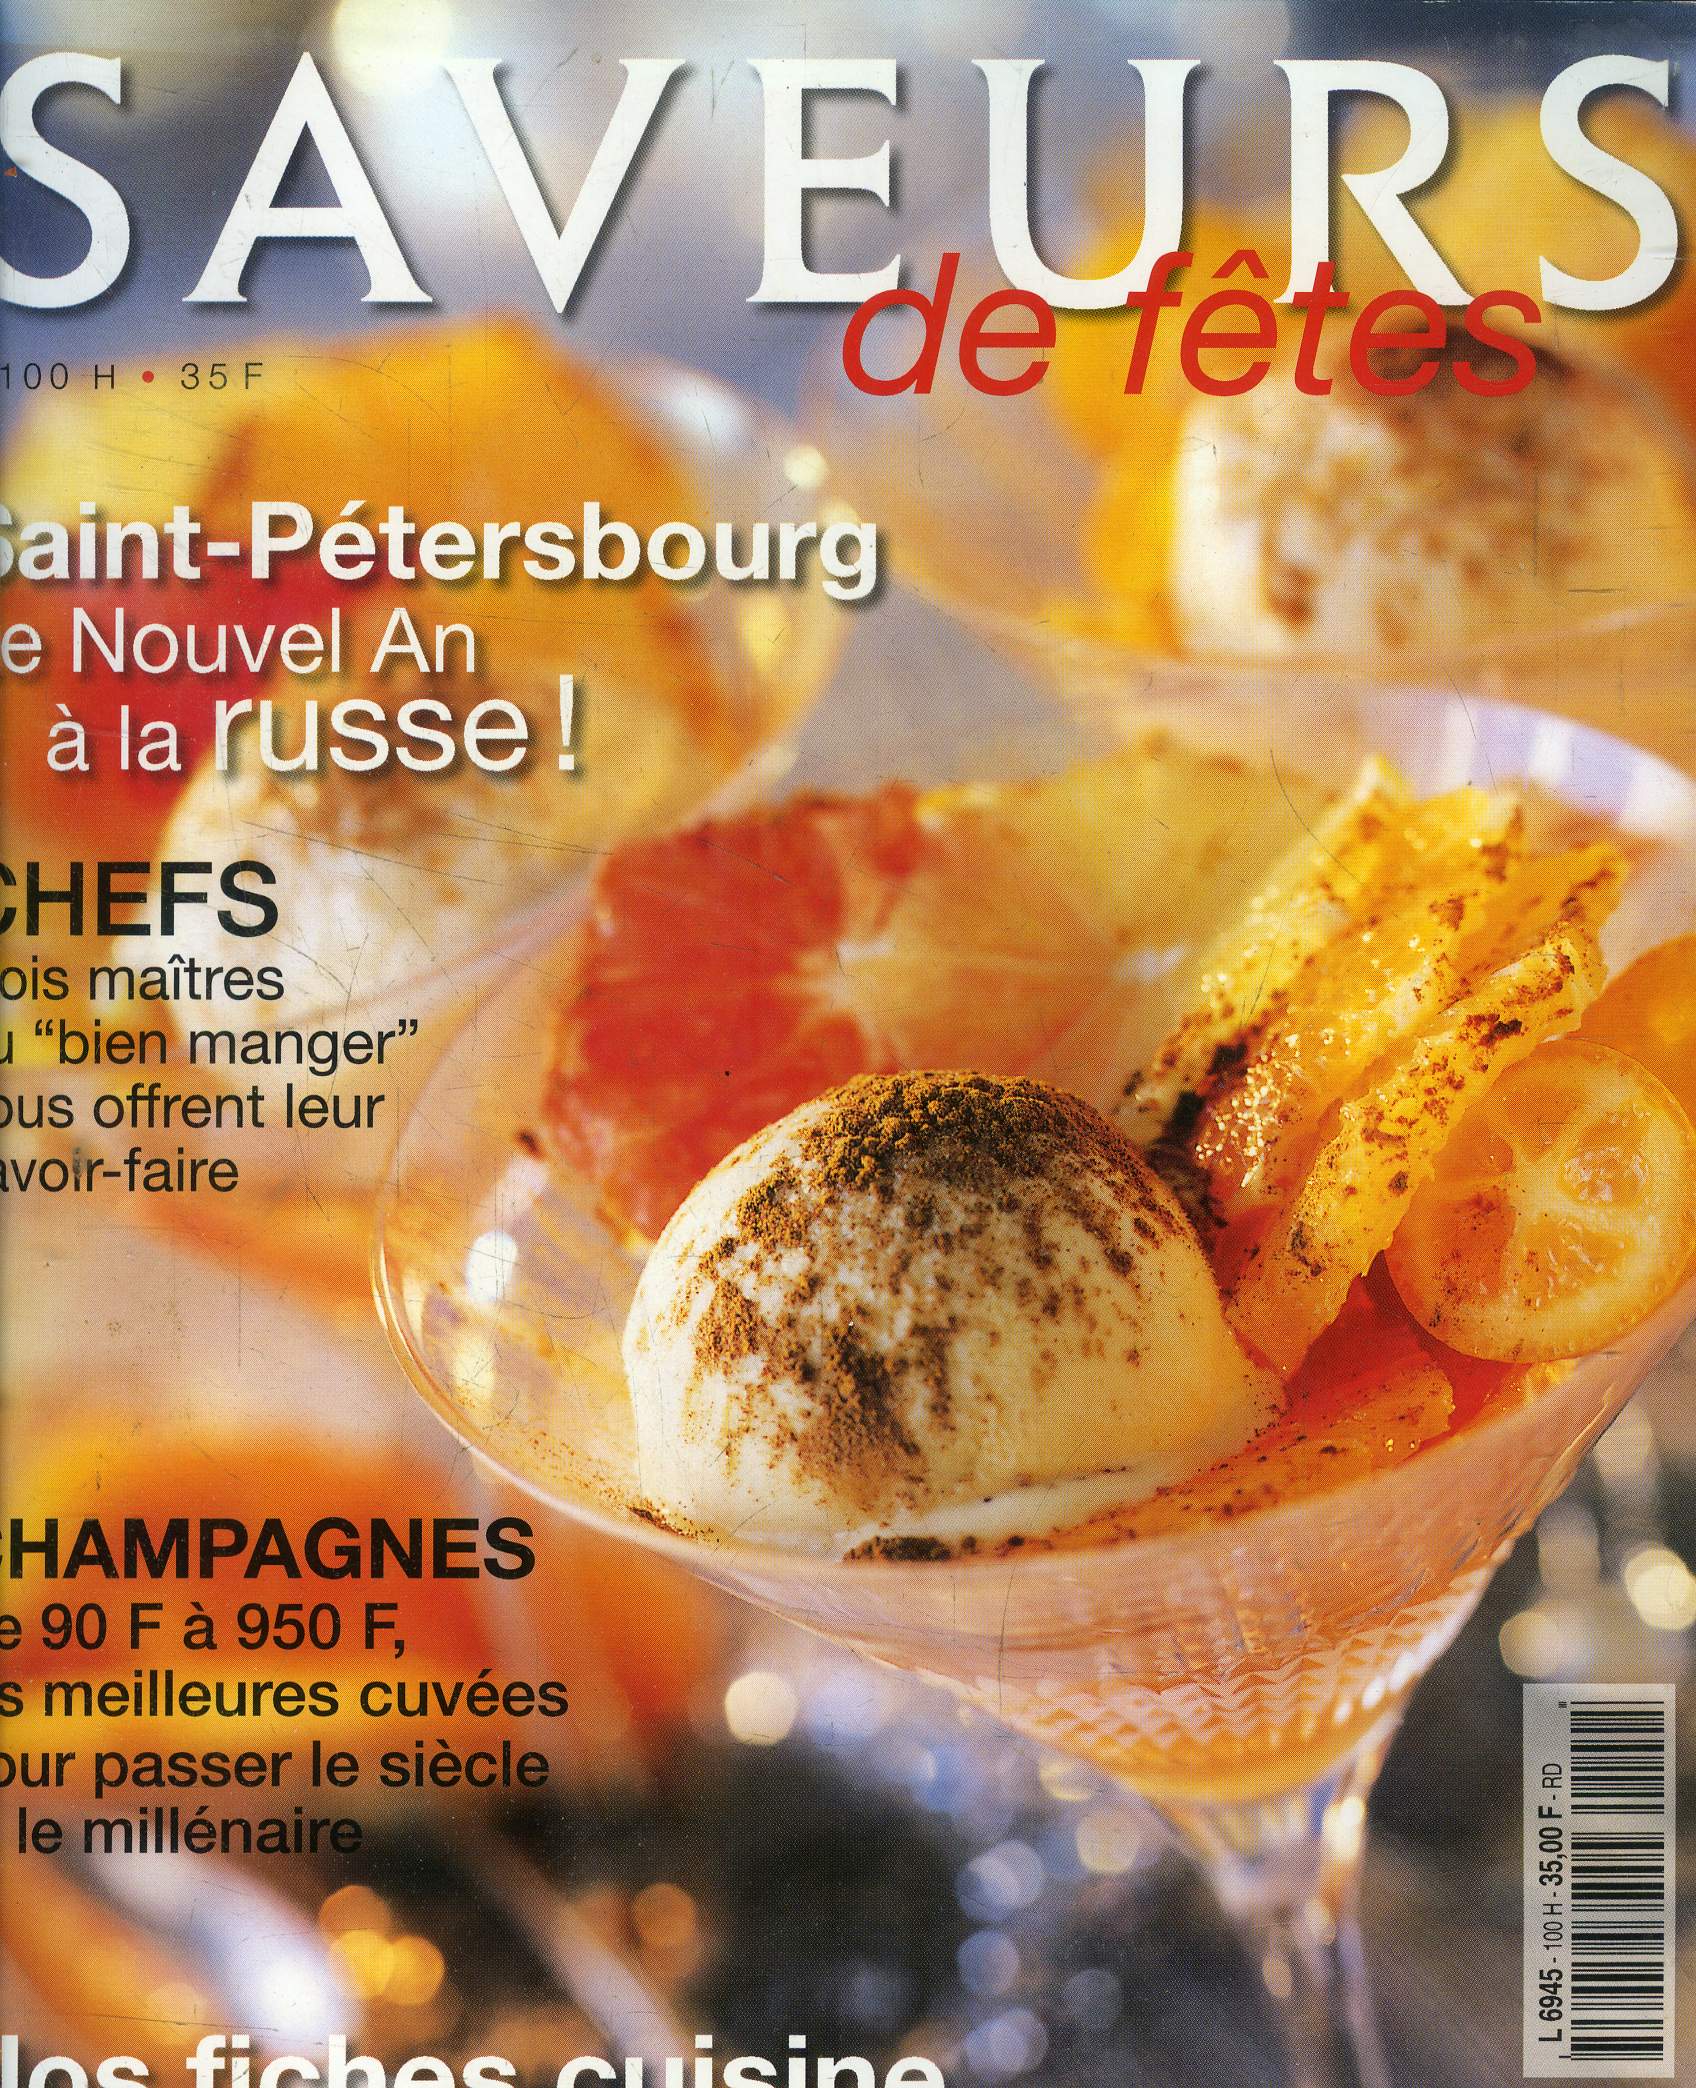 Saveurs - Hors-Srie - N100 H - Spcial ftes : Saint-Ptersbourg : Le Nouvel An  la russe - Chefs : Trois matres du 